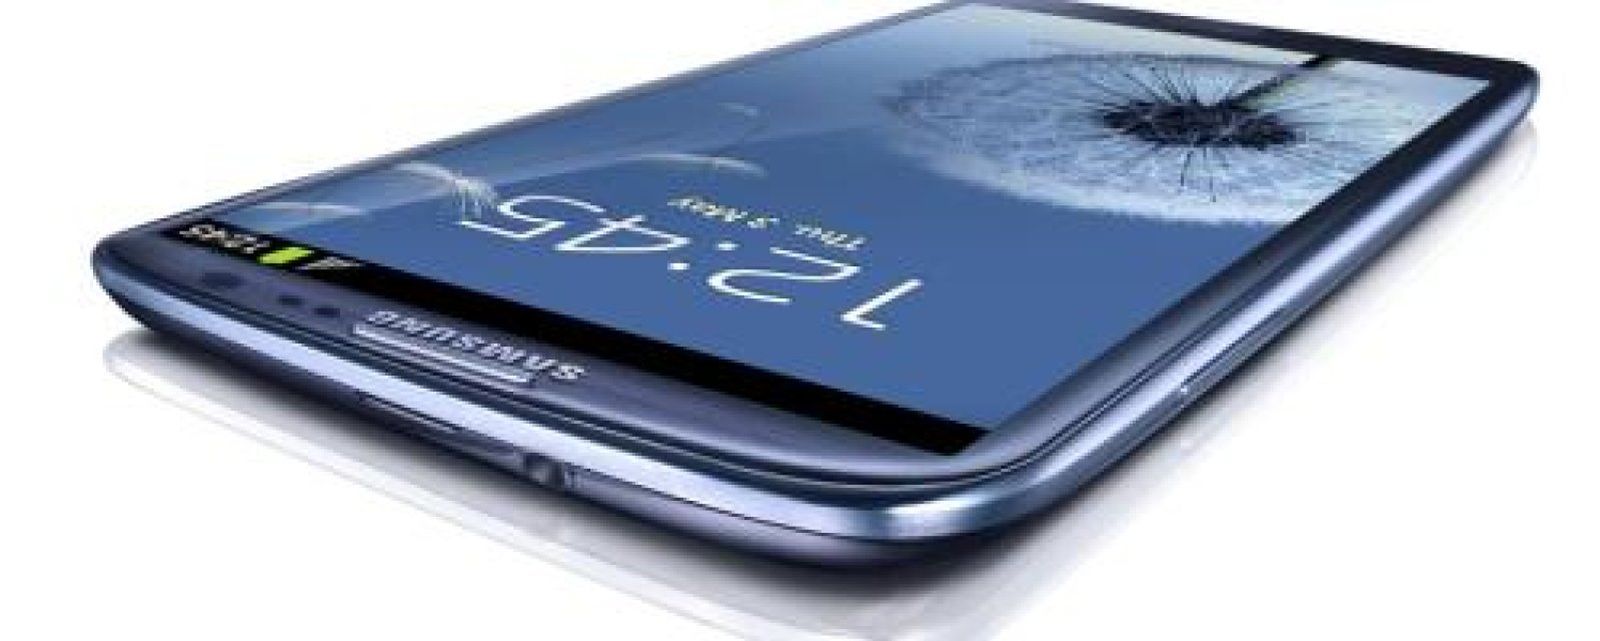 Foto: Samsung 'dispara' su Galaxy SIII bajo la sombra del iPhone 5